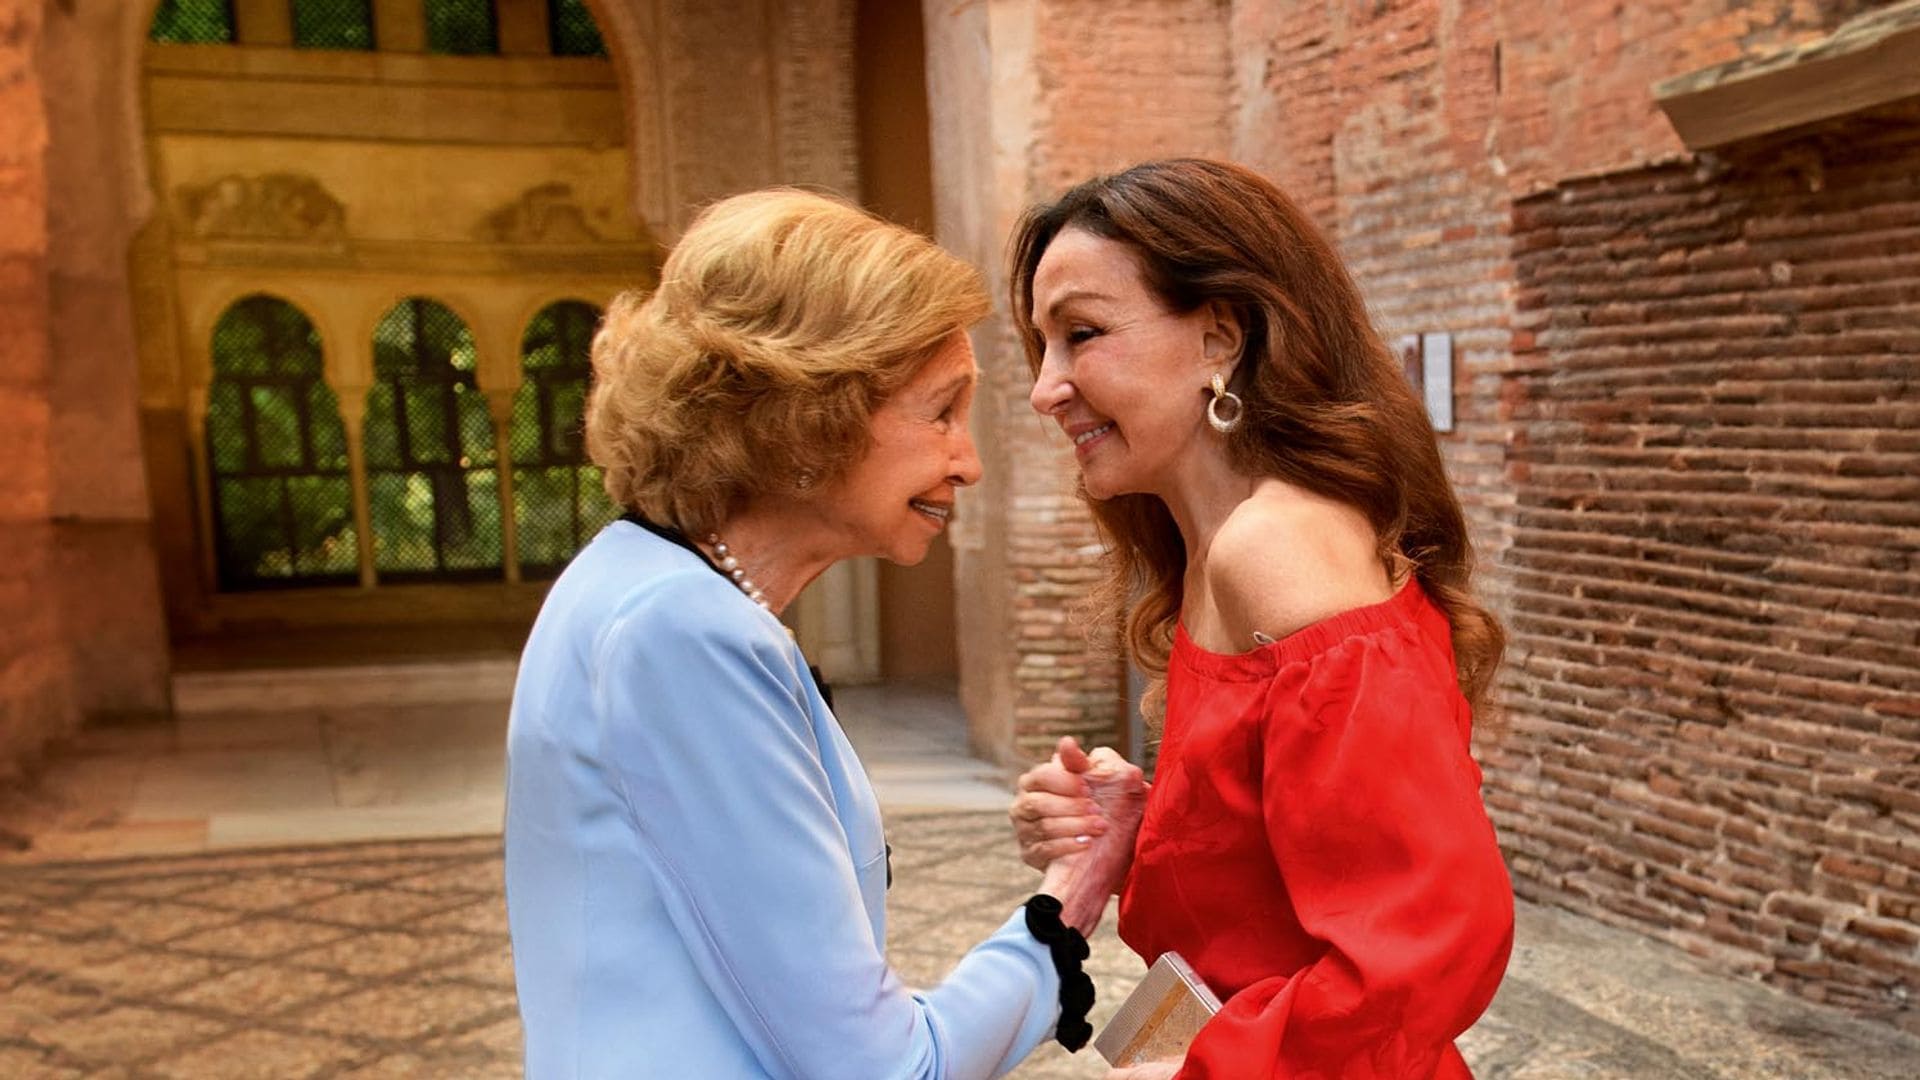 La reina Sofía, Alicia y Esther Koplowitz: las imágenes de su cariñoso reencuentro en Granada